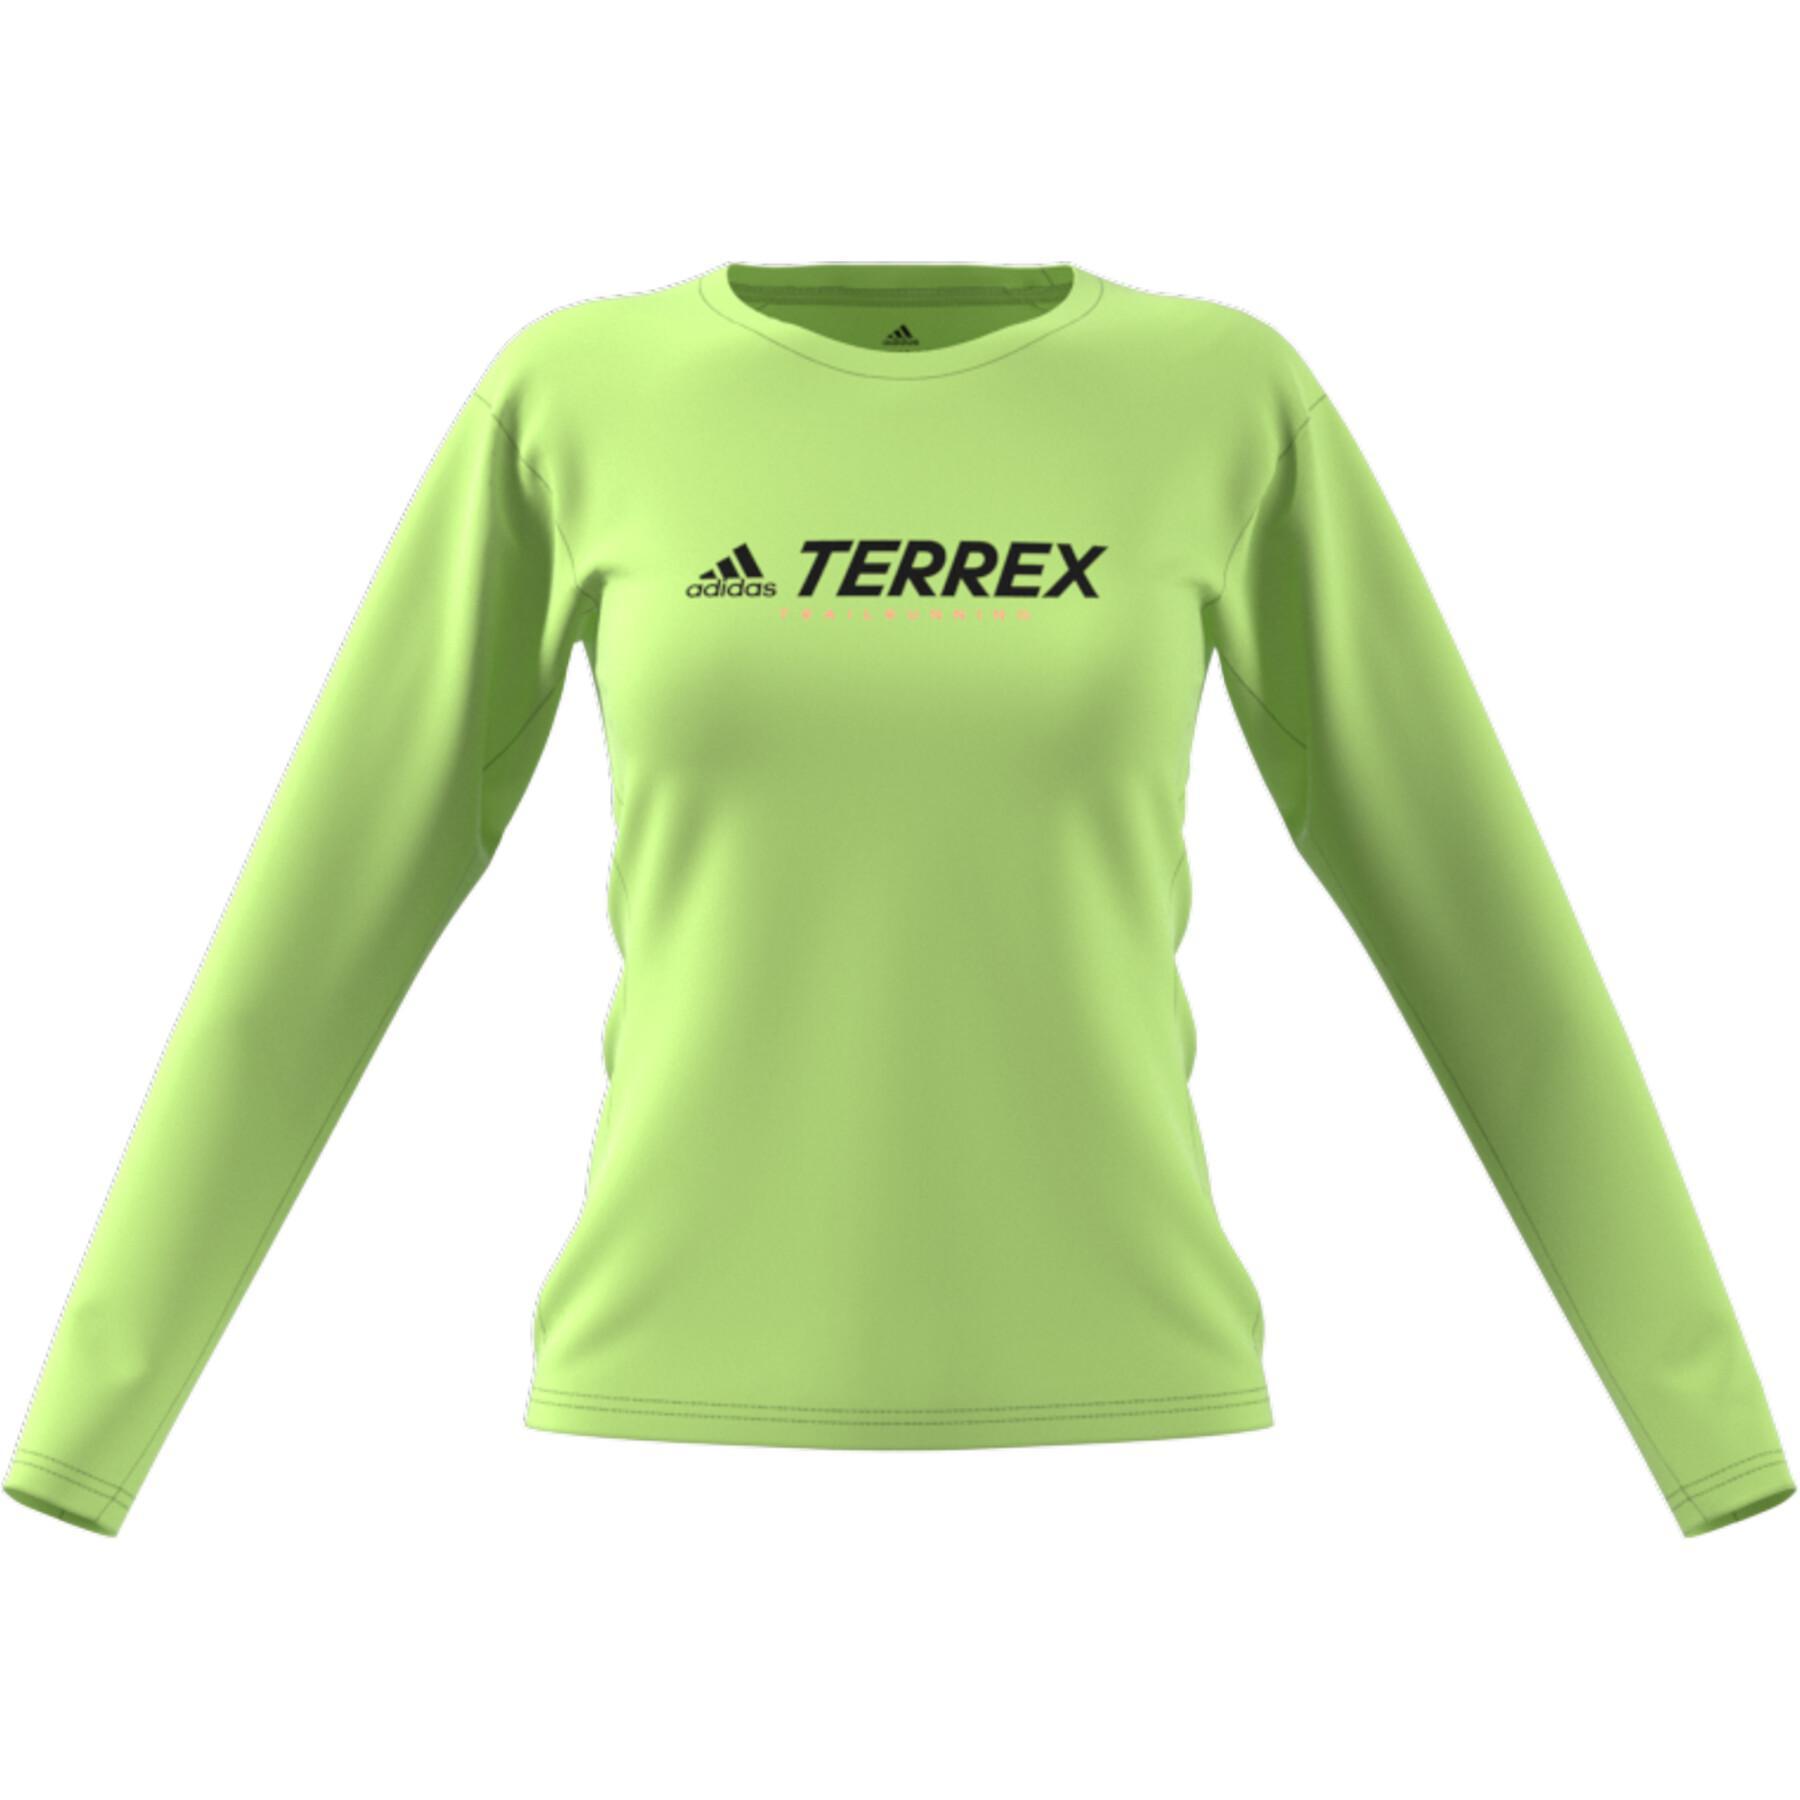 Camiseta de mujer adidas Terrex Primeblue Trail